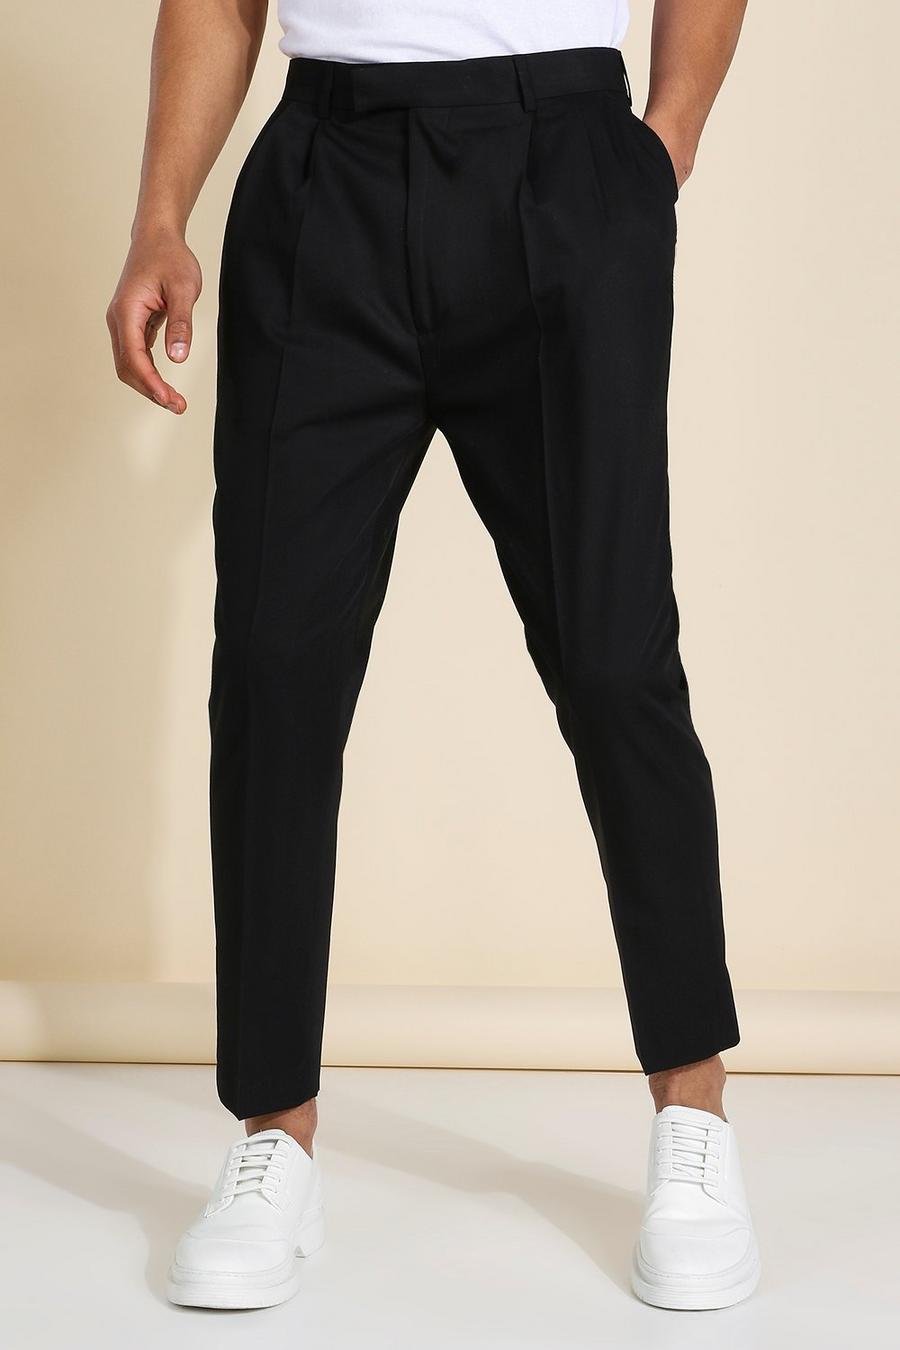 Pantalón de traje estrecho tobillero con cintura alta, Black negro